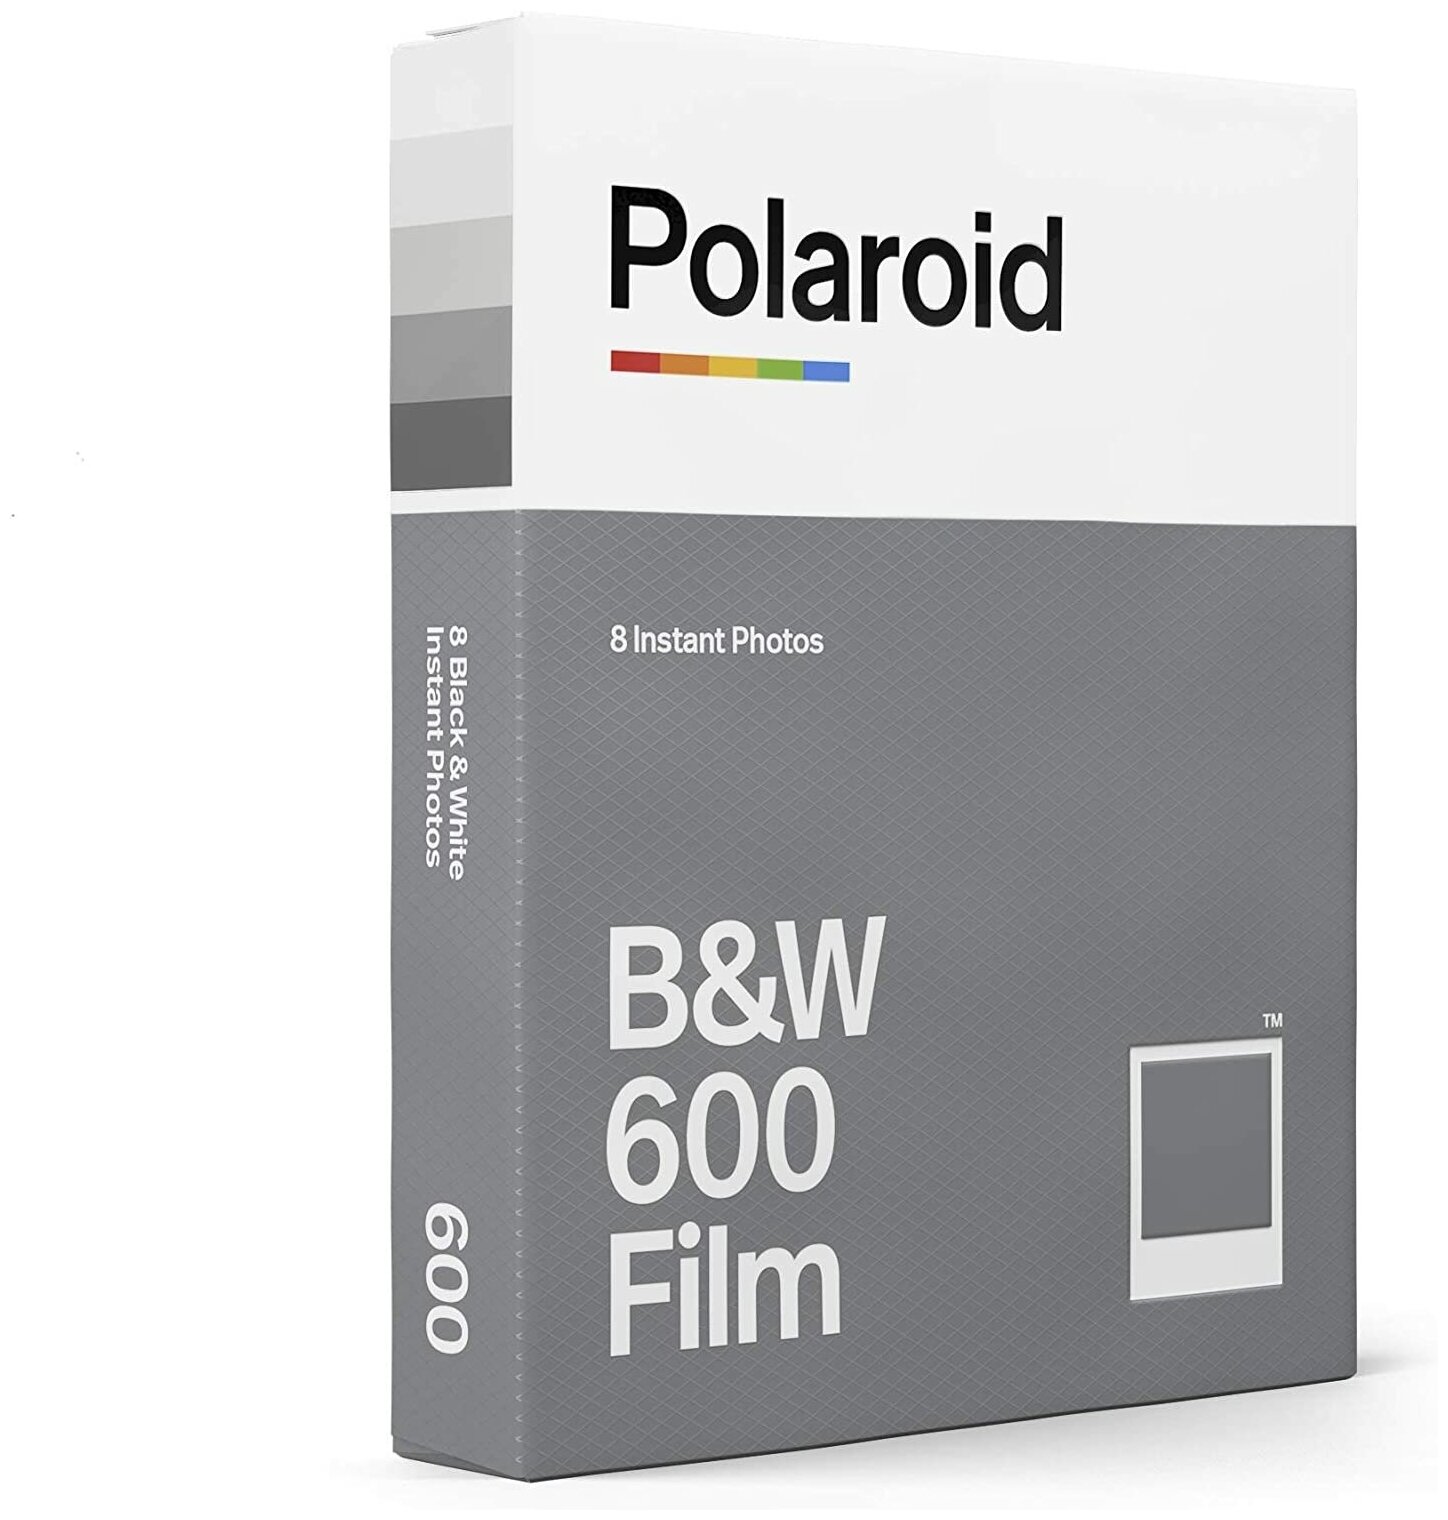 Картридж Polaroid BW 600 Film полароид чб 8 снимков